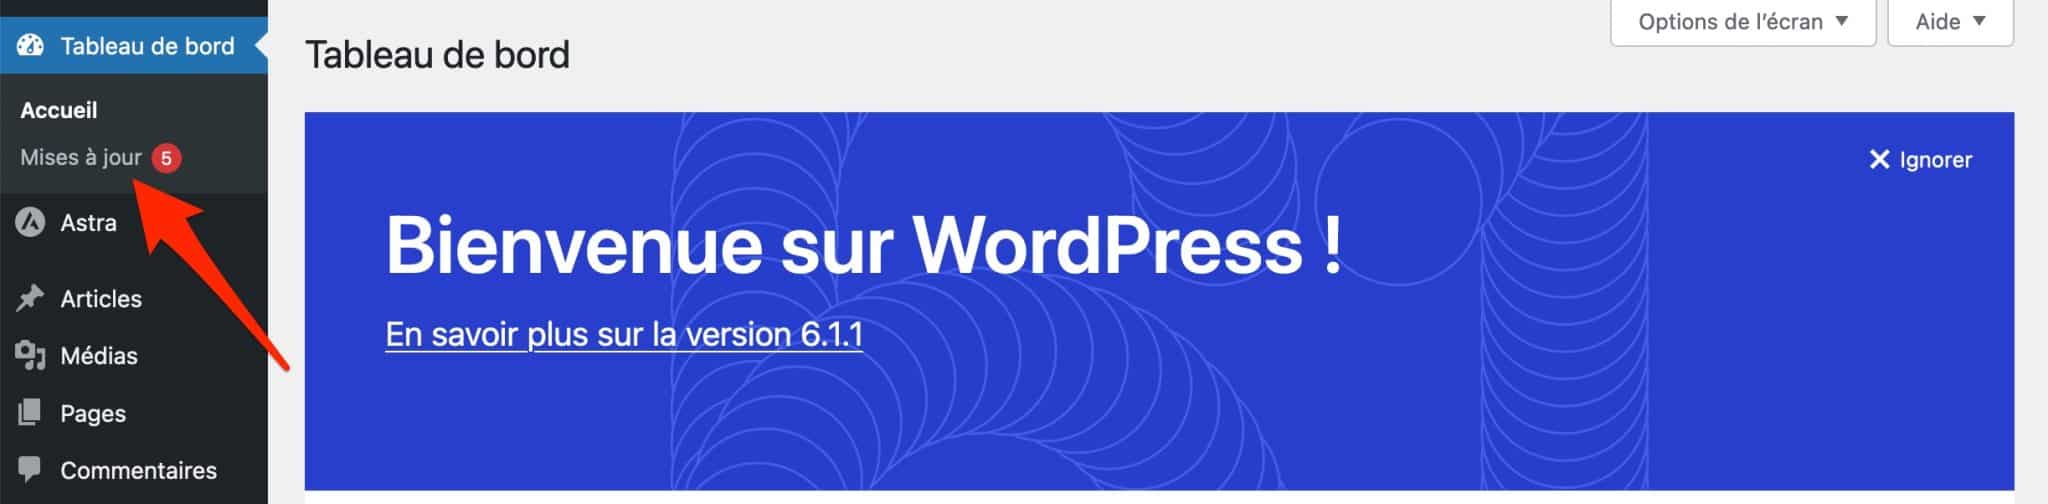 L'interface d'administration de WordPress vous signale quand une mise à jour est disponible.